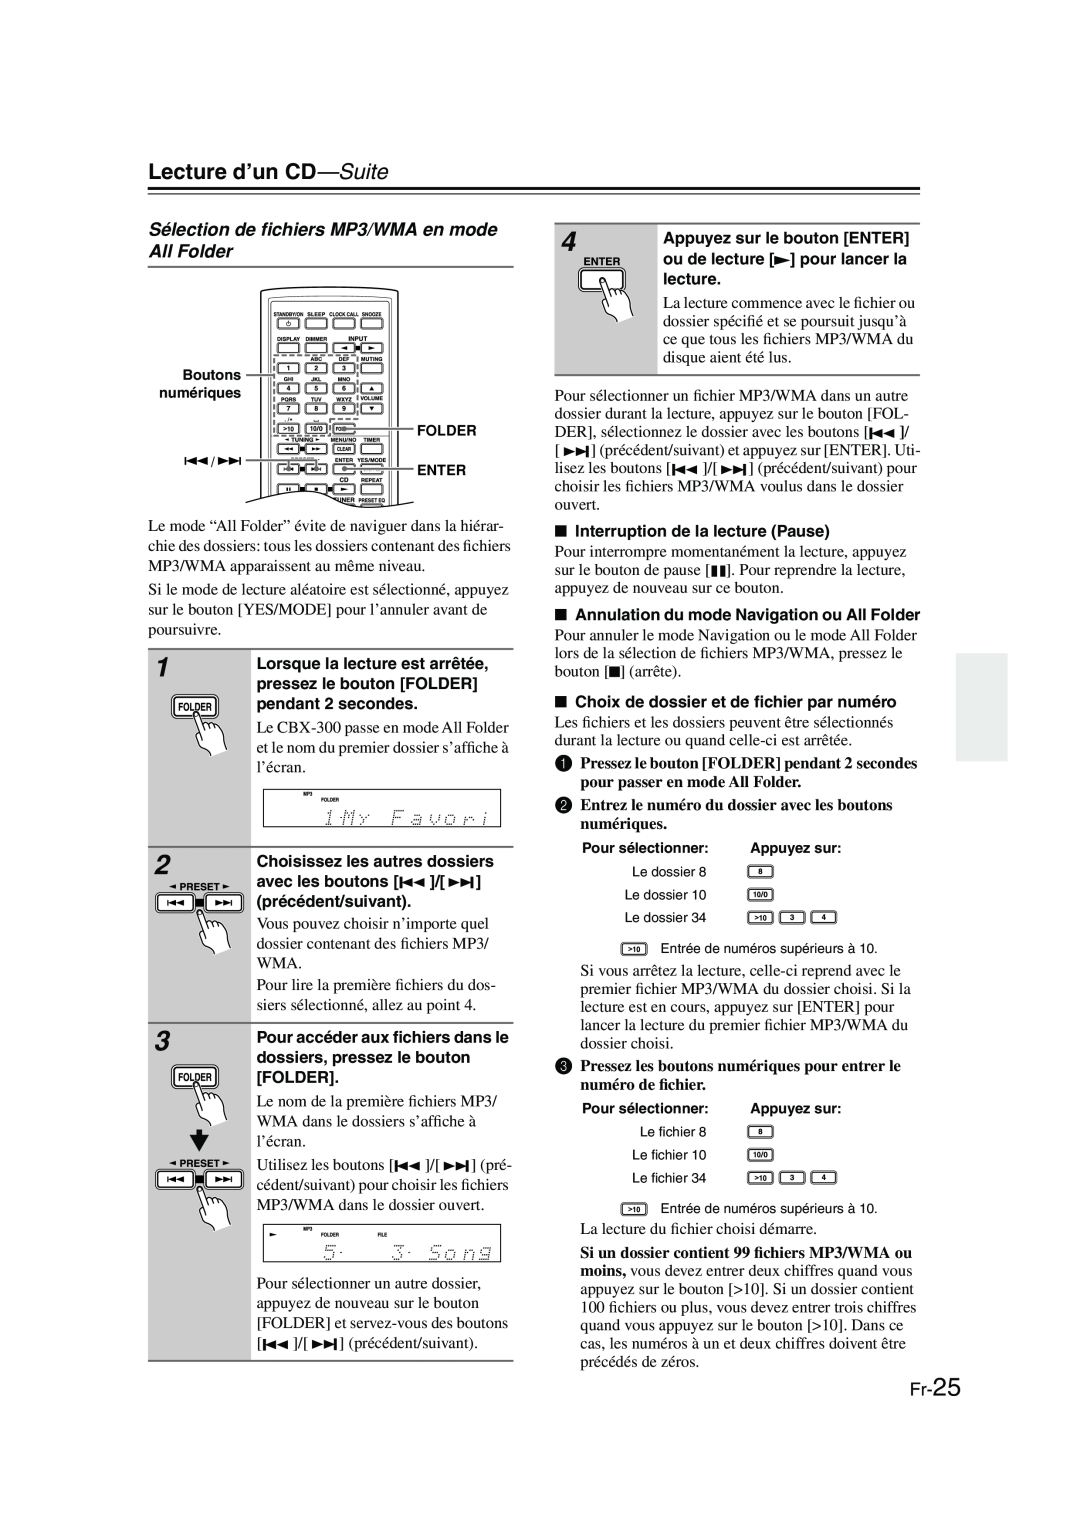 Onkyo CBX-300 instruction manual Sélection de ﬁchiers MP3/WMA en mode All Folder, Fr-25, Lecture d’un CD—Suite 